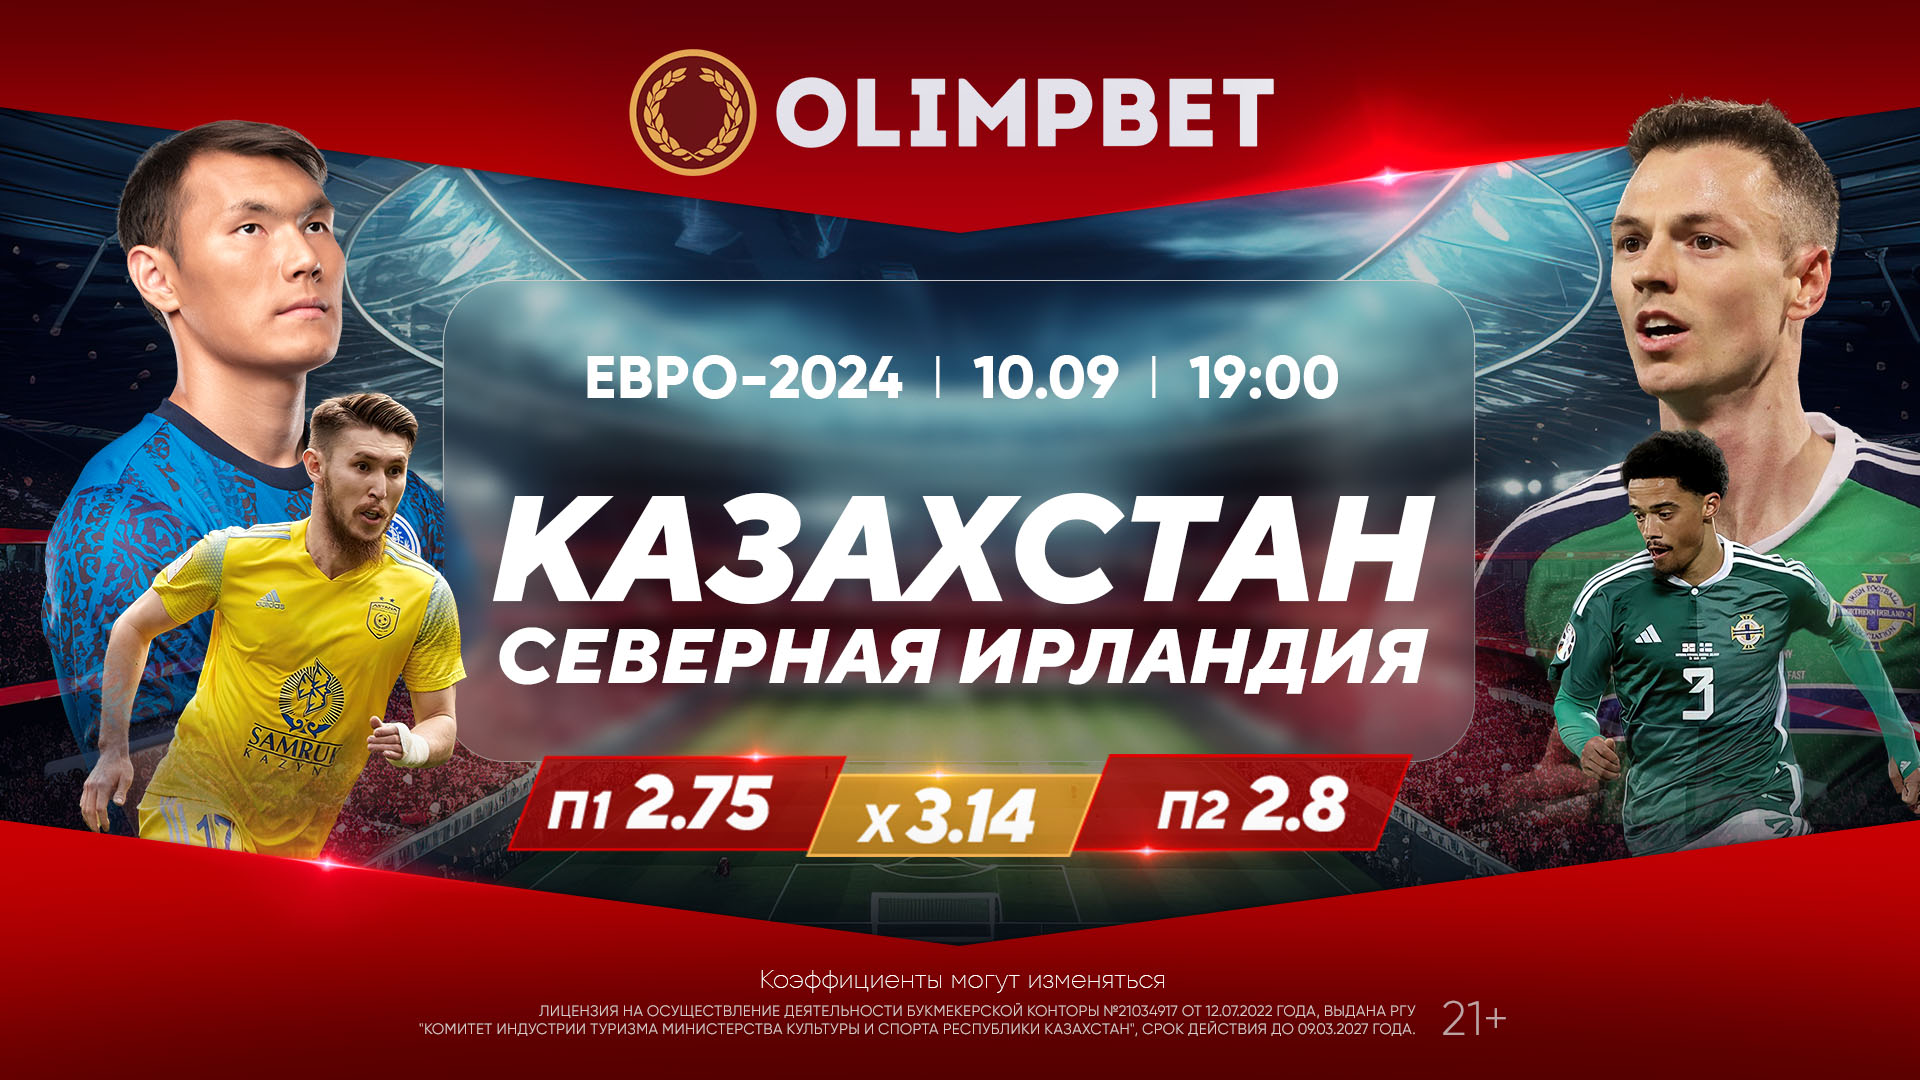 Olimpbet предлагает кэшбэк, призы и проводит фестиваль футбола с трансляцией игры Казахстан – С. Ирландия